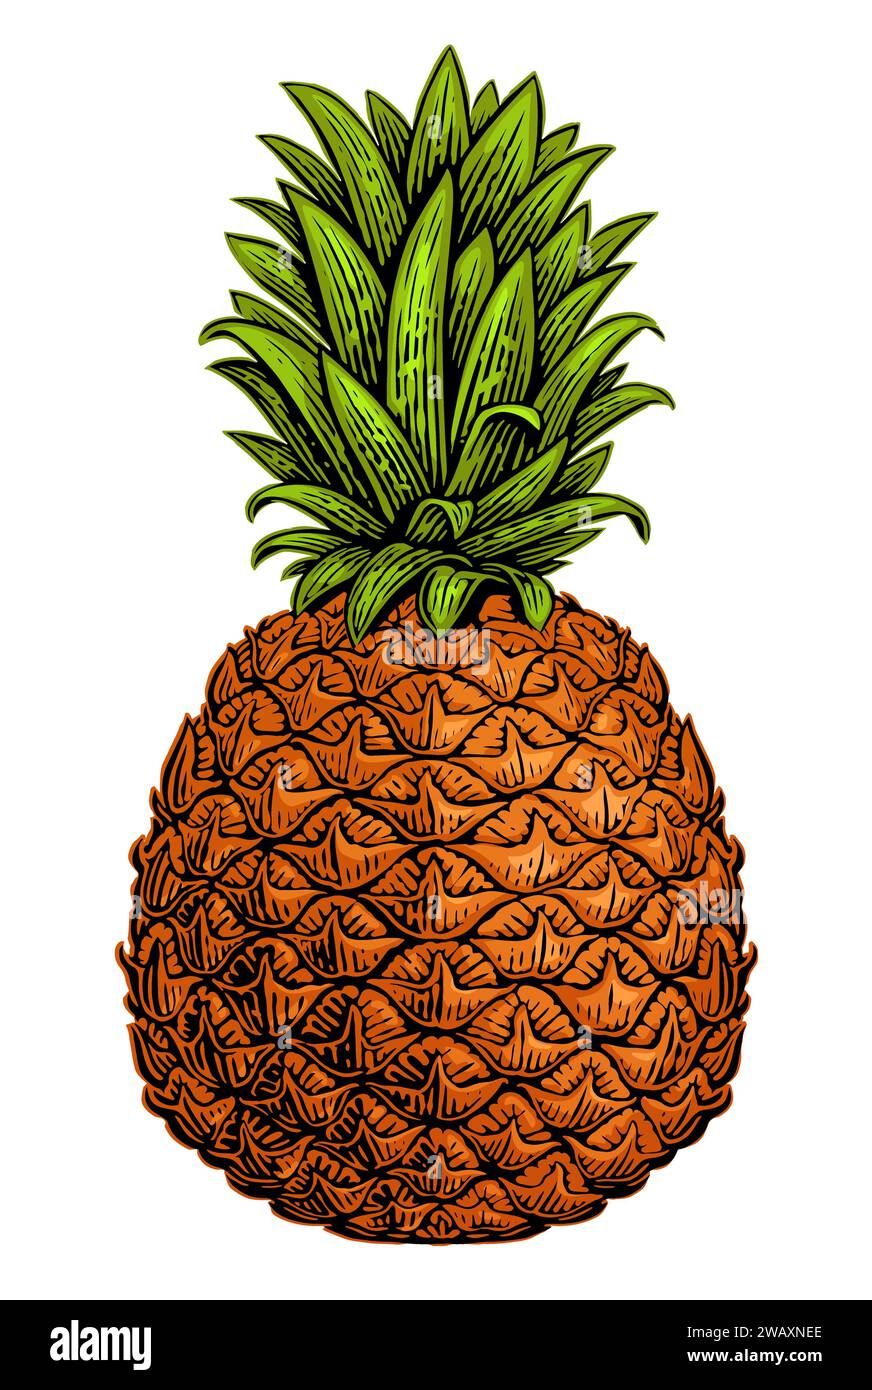 Ananas isolato su sfondo bianco. Frutta tropicale estiva. Illustrazione vettoriale a colori Illustrazione Vettoriale